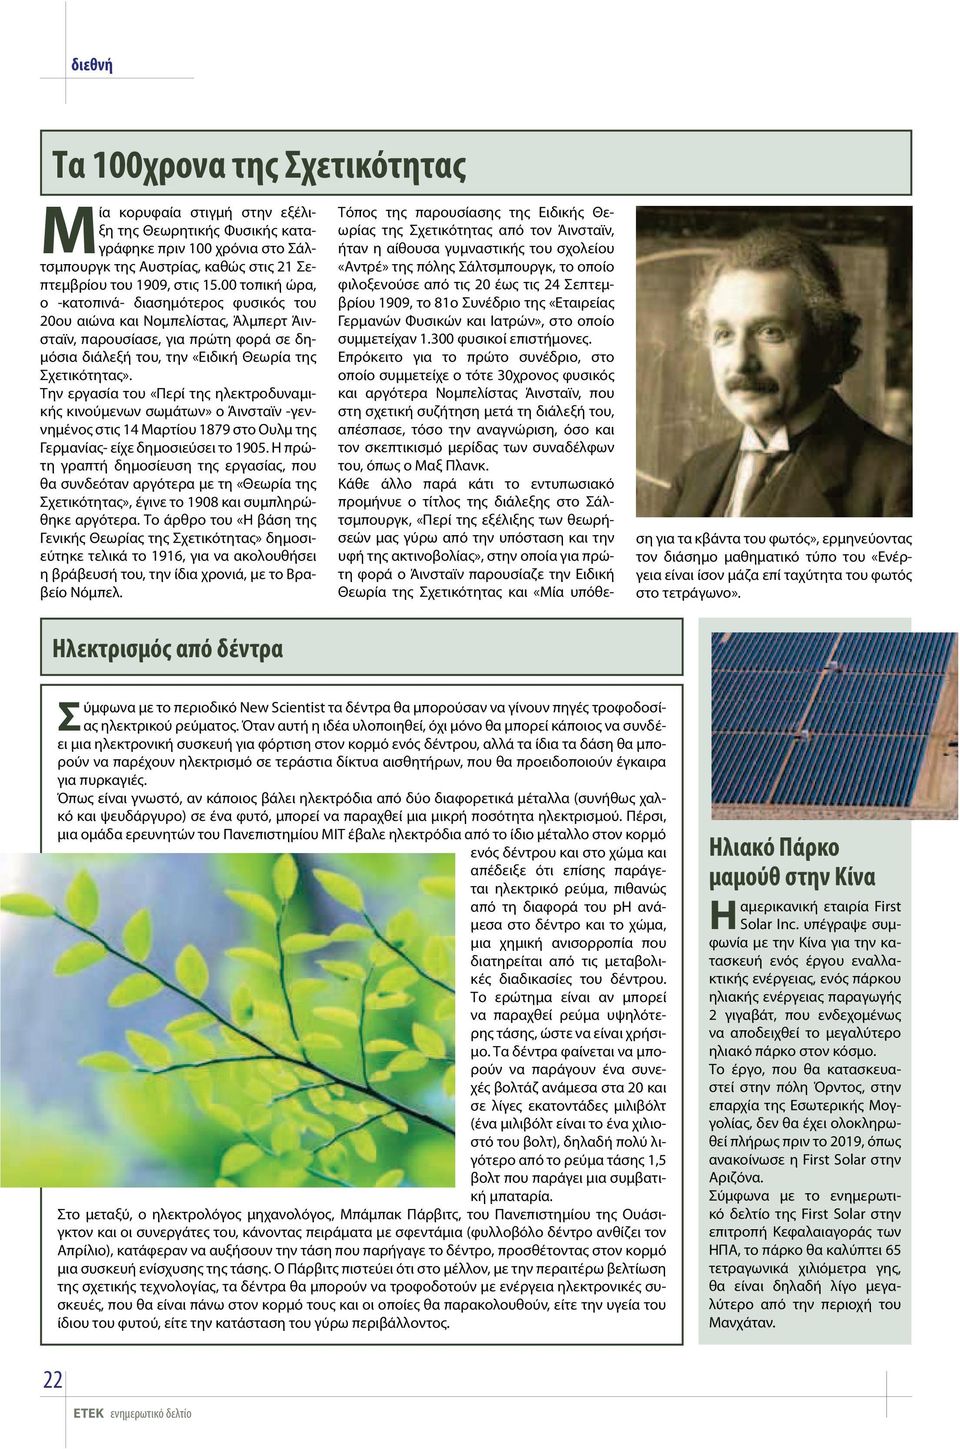 Την εργασία του «Περί της ηλεκτροδυναμικής κινούμενων σωμάτων» ο Άινσταϊν -γεννημένος στις 14 Μαρτίου 1879 στο Ουλμ της Γερμανίας- είχε δημοσιεύσει το 1905.